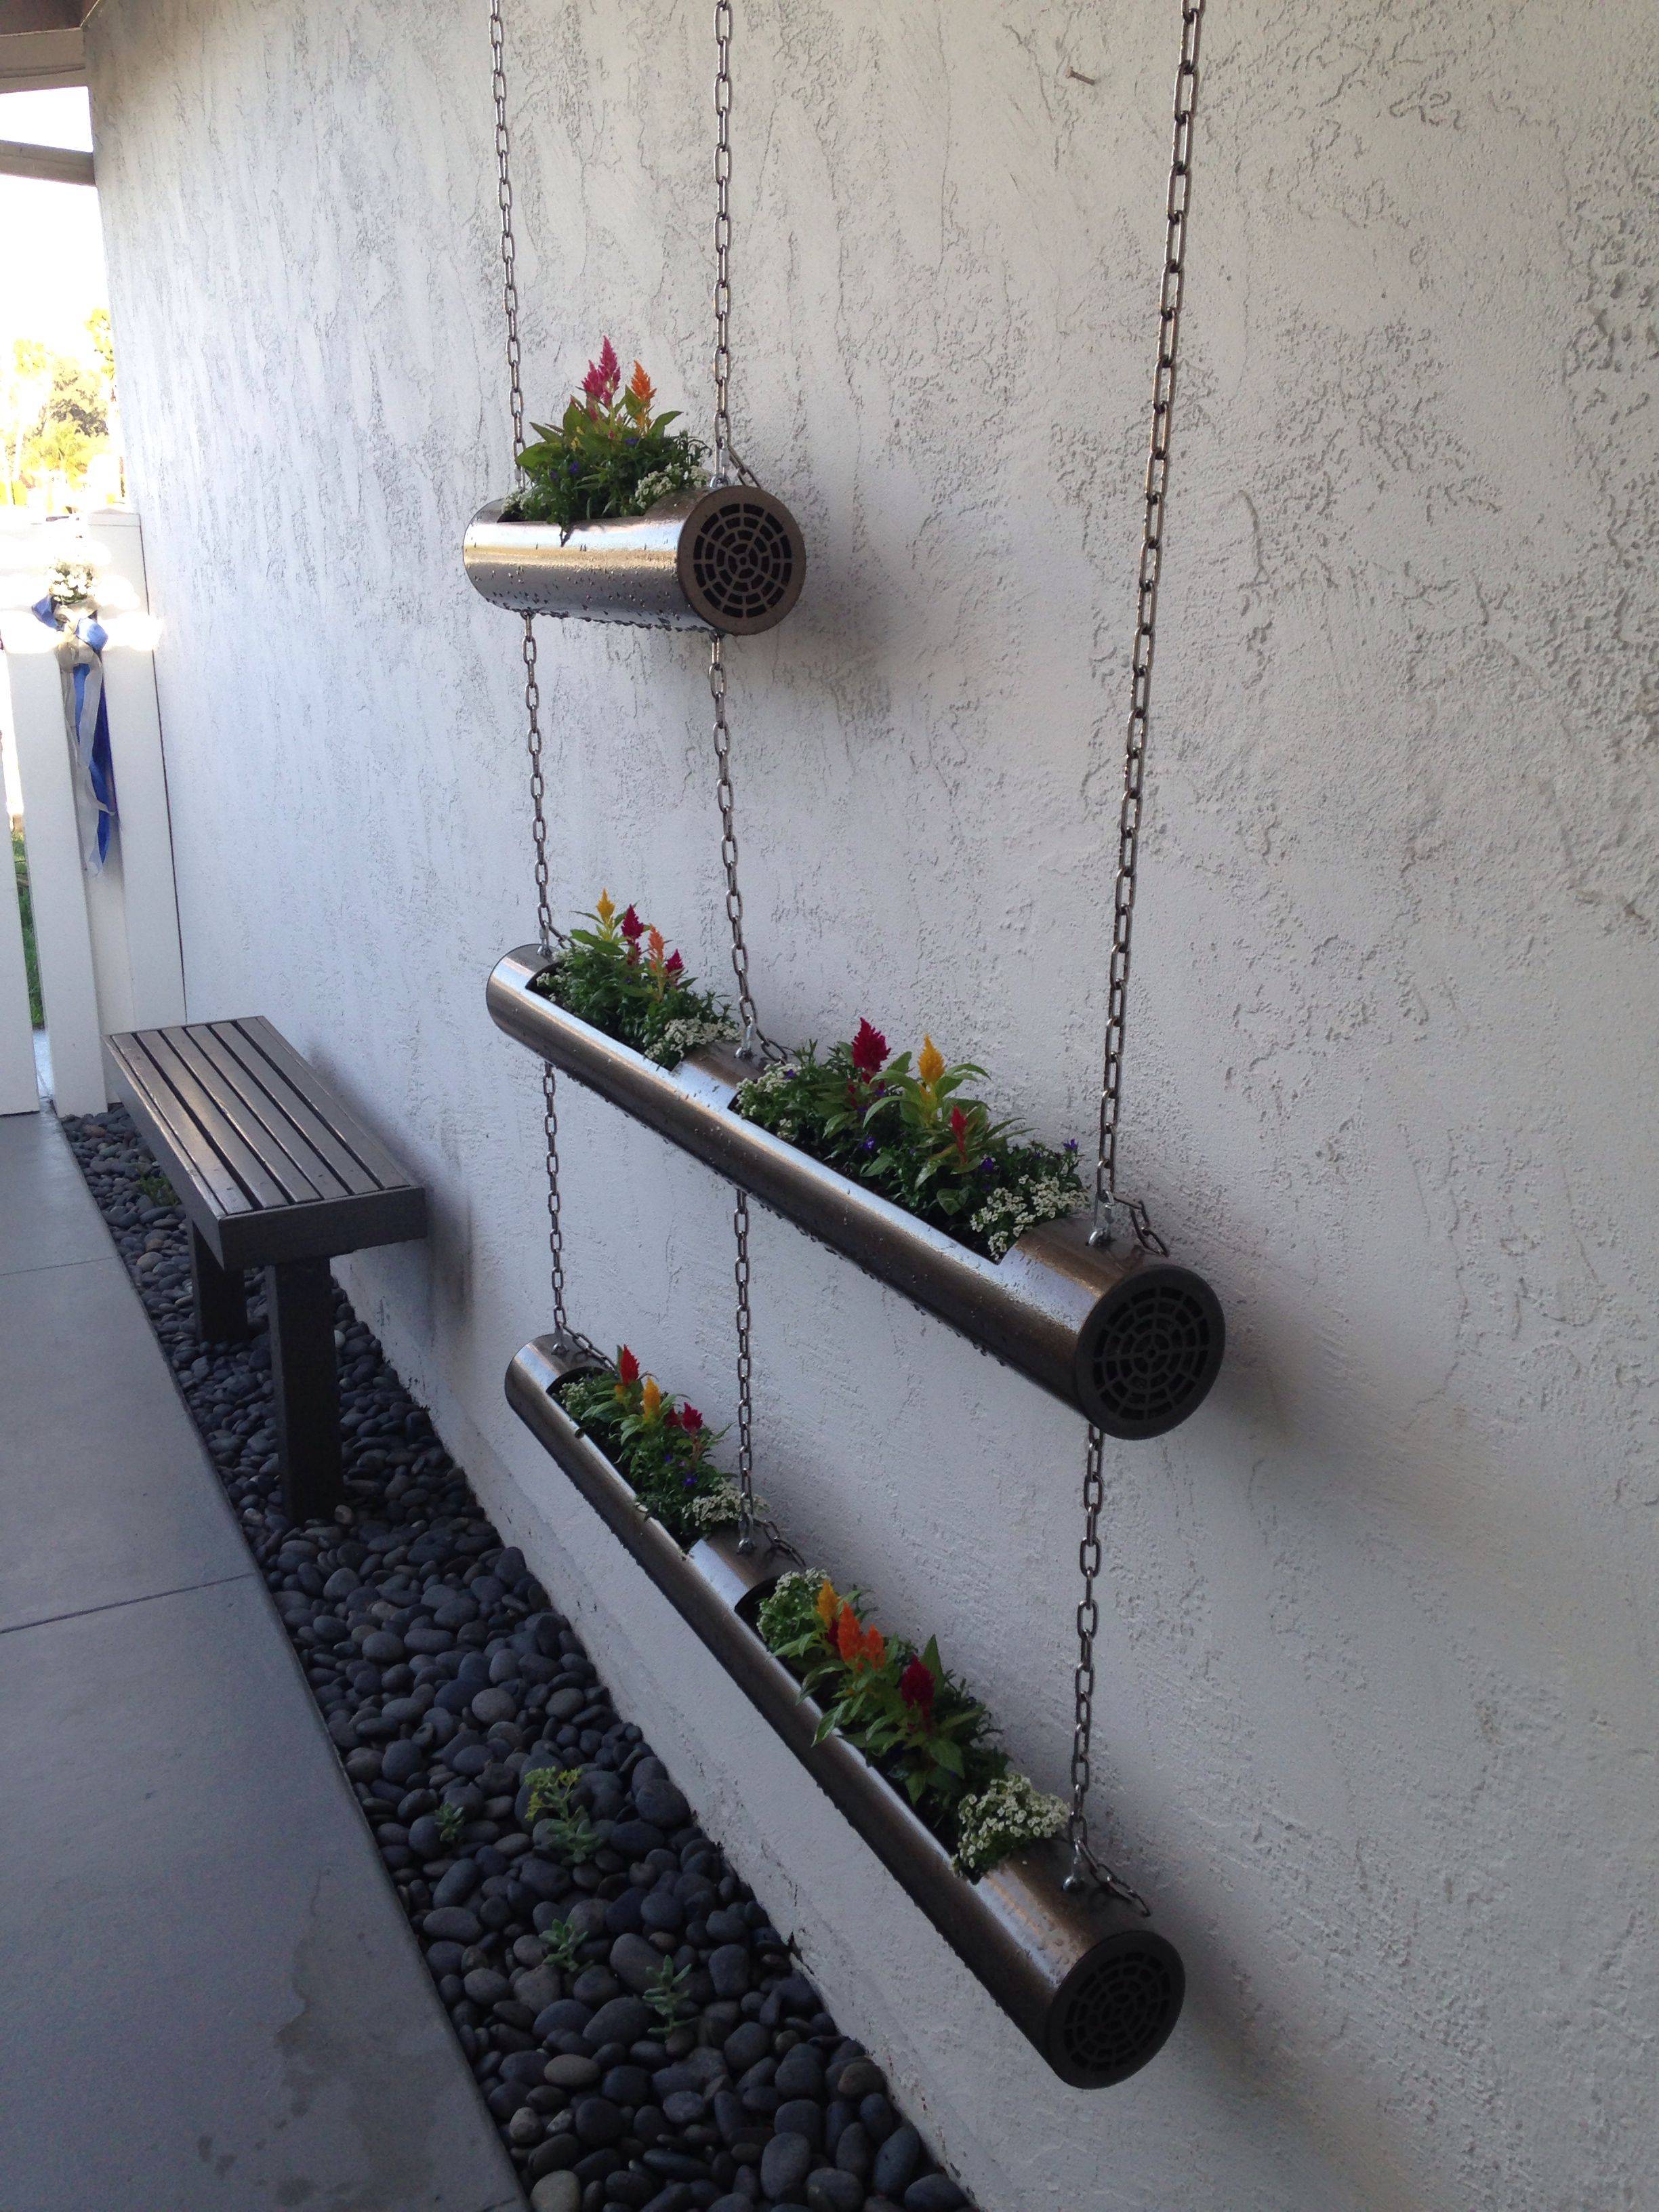 Cool Vertical Gardening Ideas